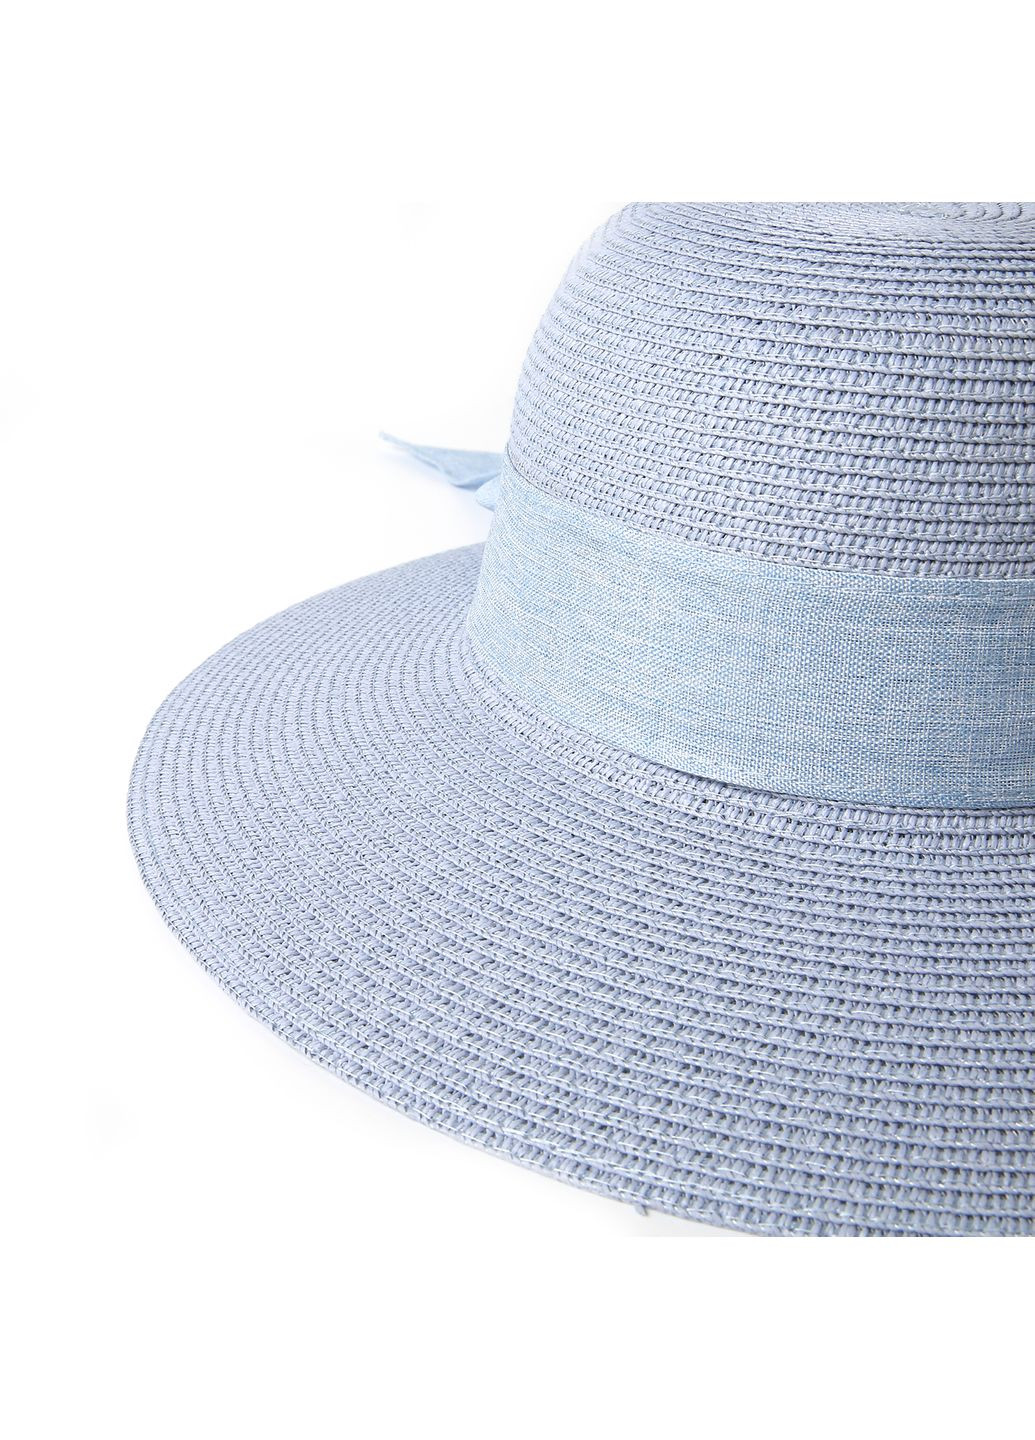 Шляпа со средними полями женская бумага голубая COCO LuckyLOOK 376-305 (289478293)